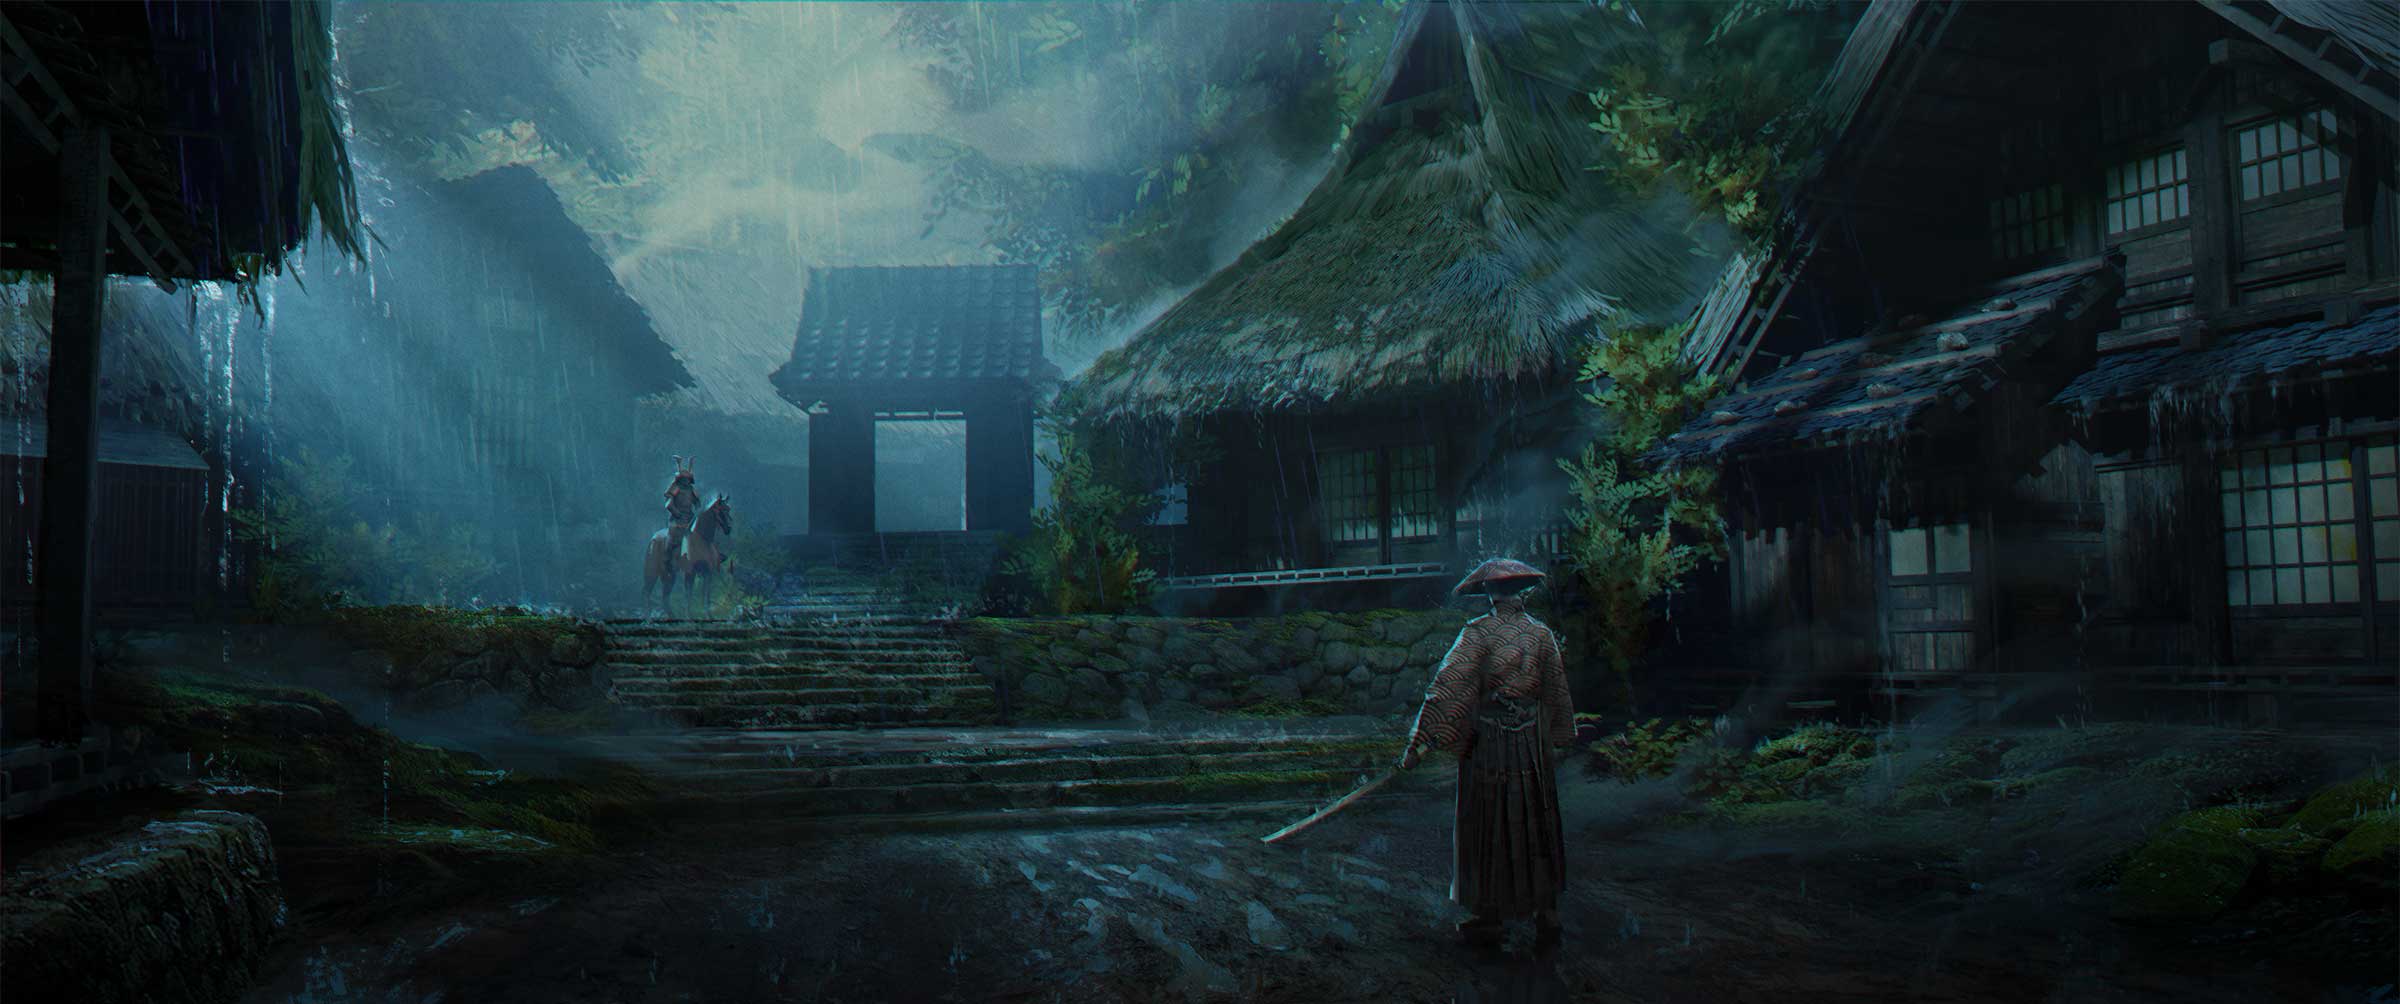 A showdown between two samurai in a dark village.